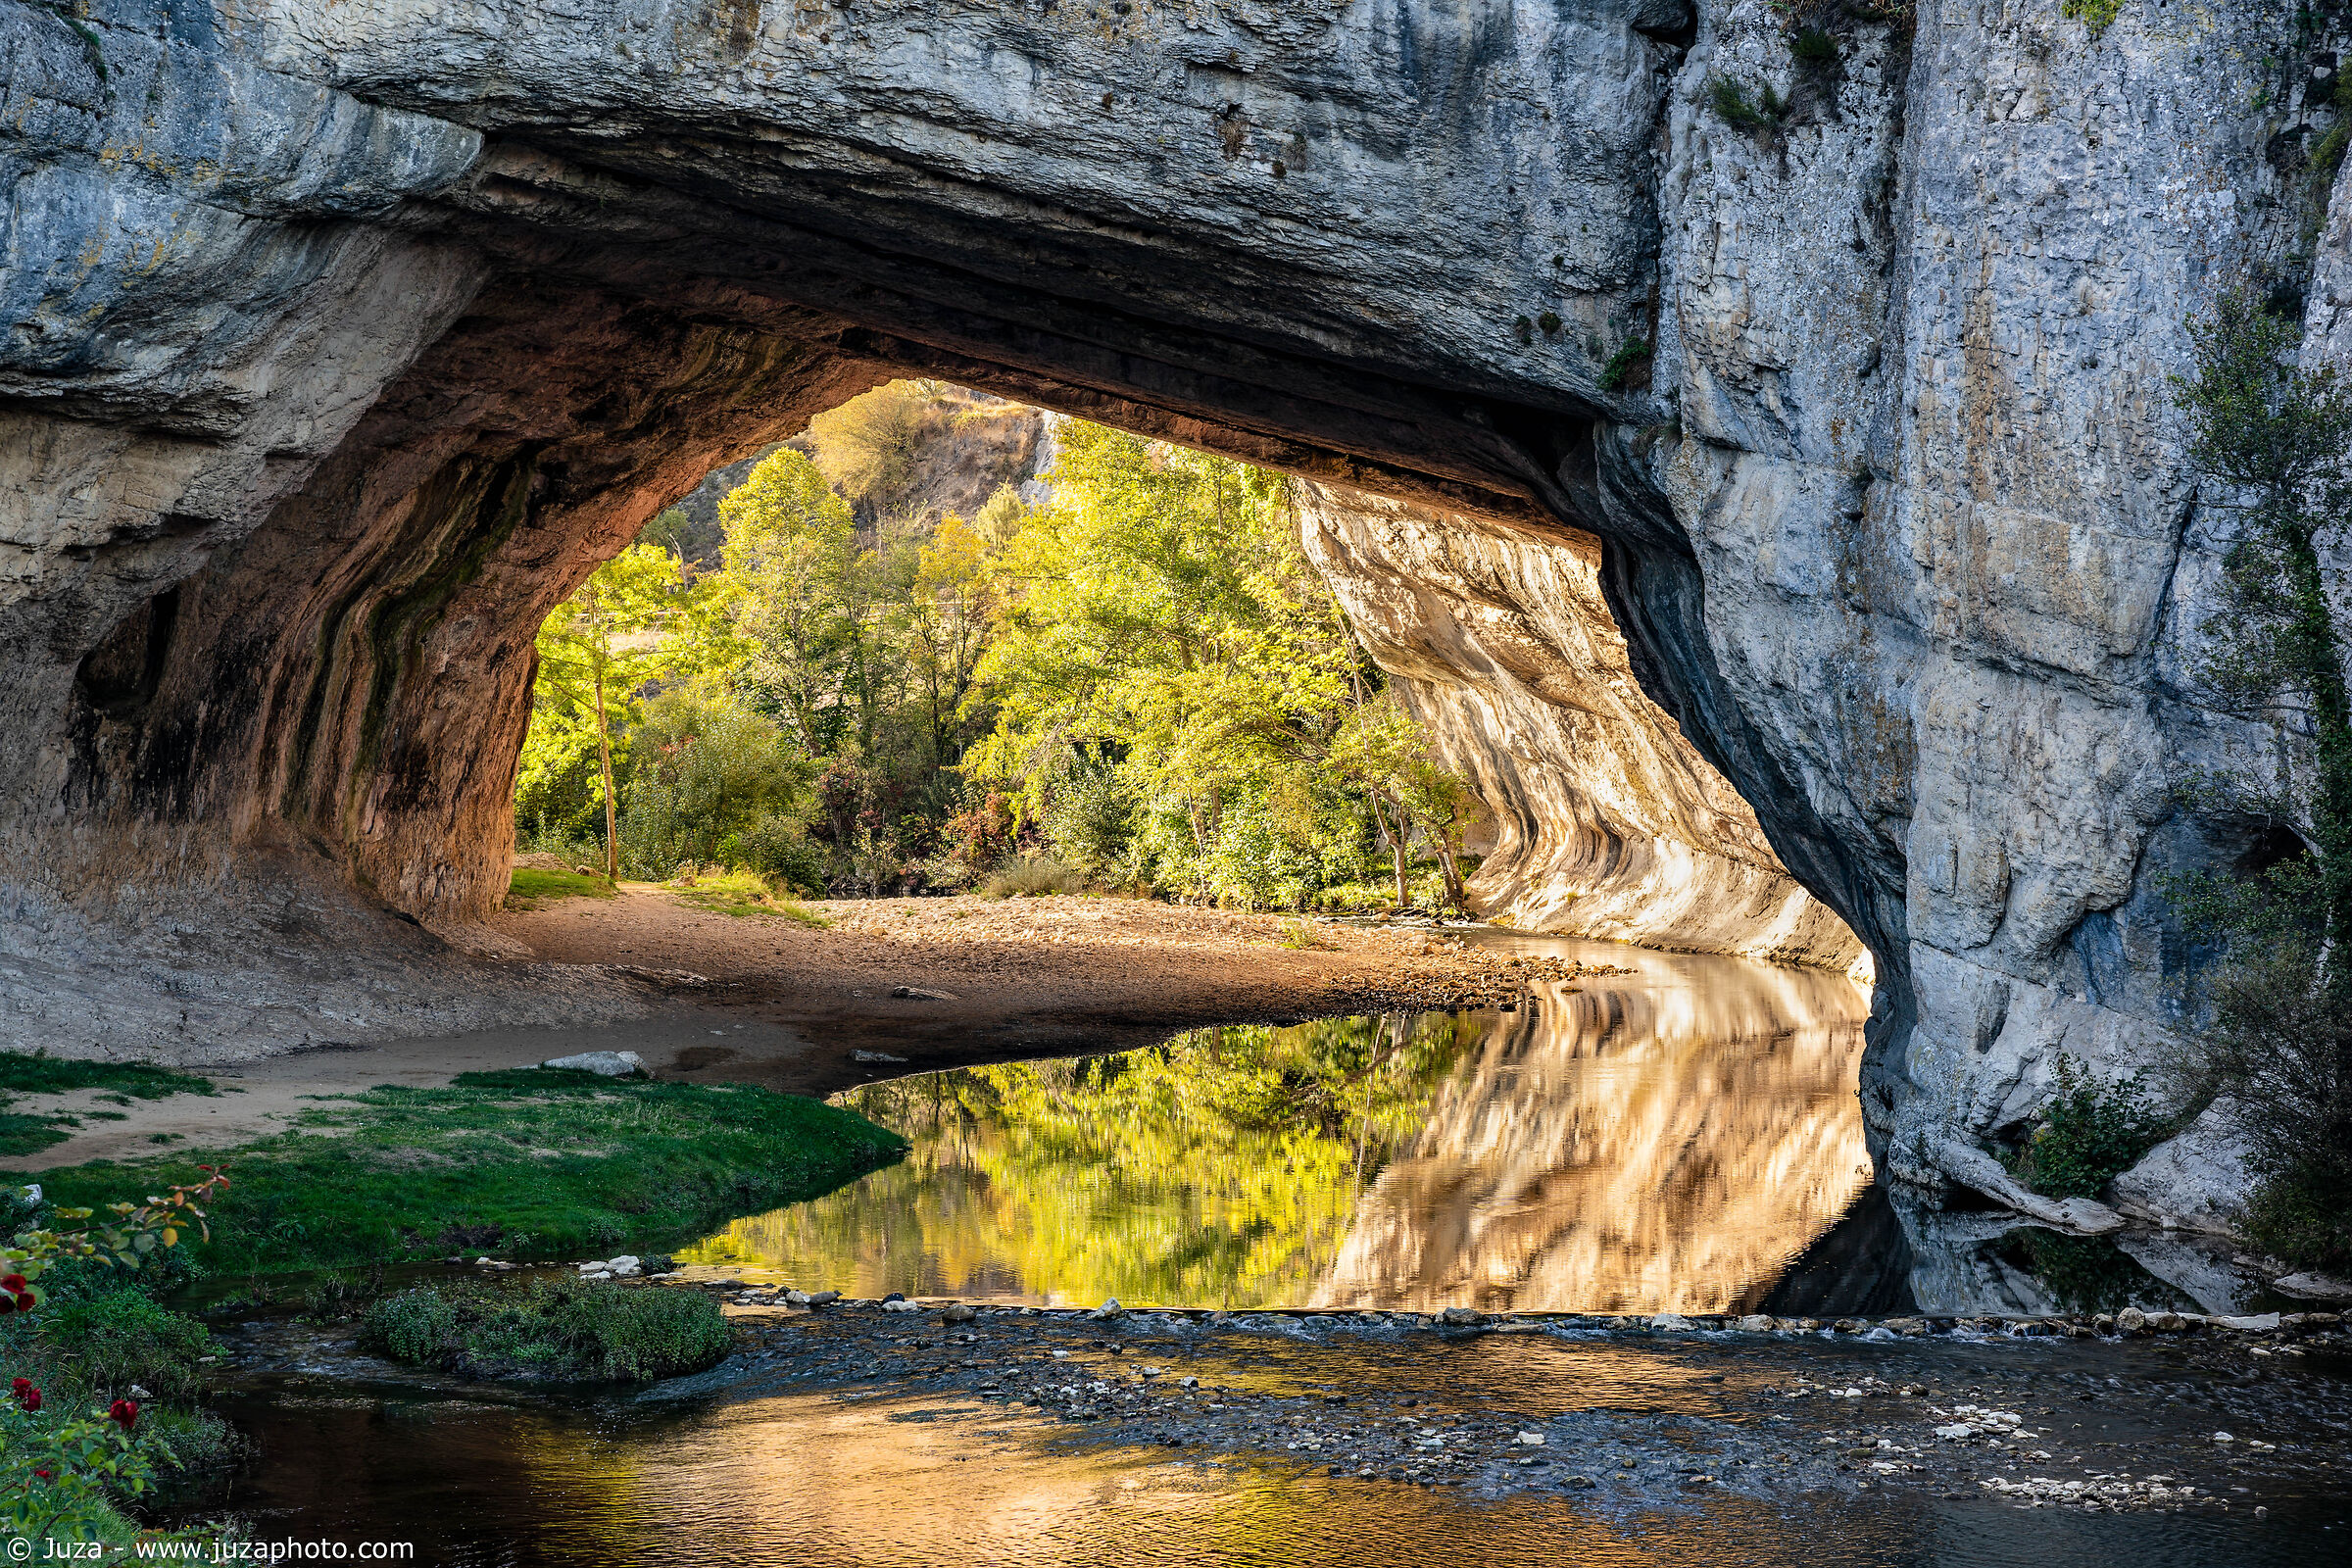 Nela River, the stone arch...